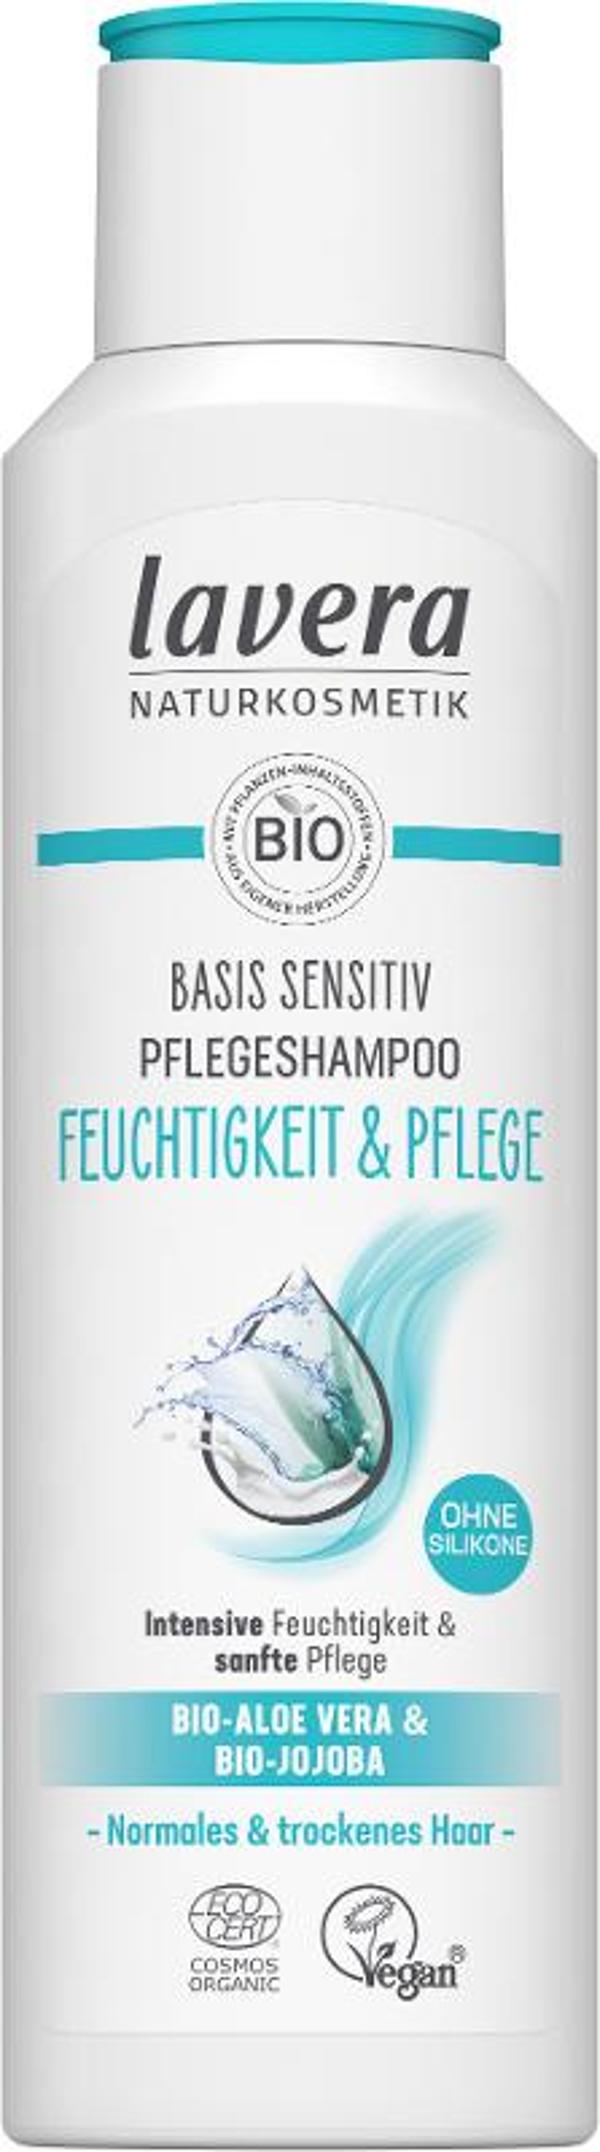 Produktfoto zu Pflegeshampoo basis sensitiv Feuchtigkeit & Pflege 250ml